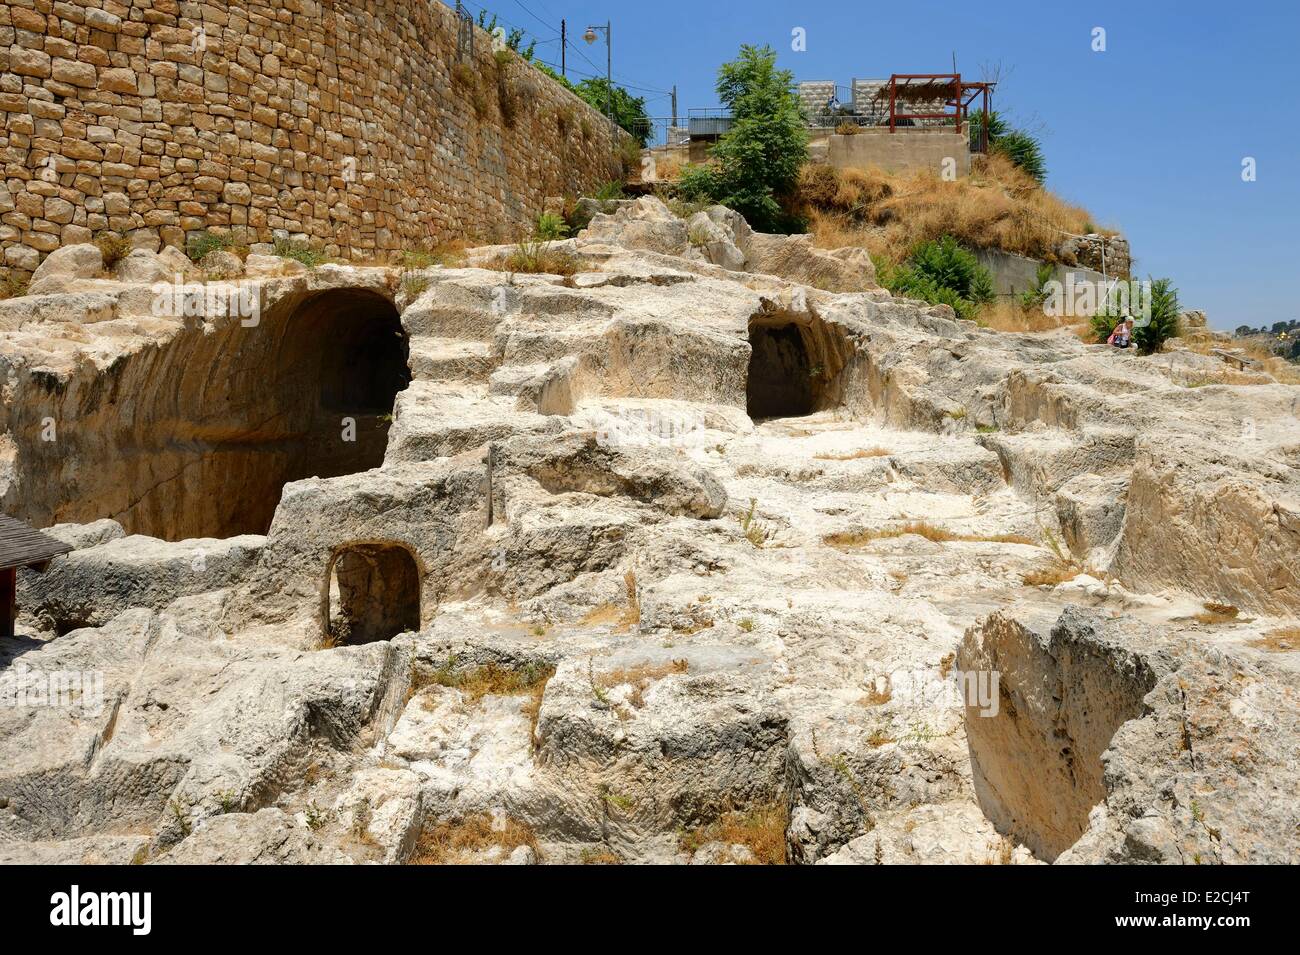 Israele, Gerusalemme, città santa, la città di Davide a sud della città vecchia, weill scavi di tombe presunta della casa di Davide Foto Stock